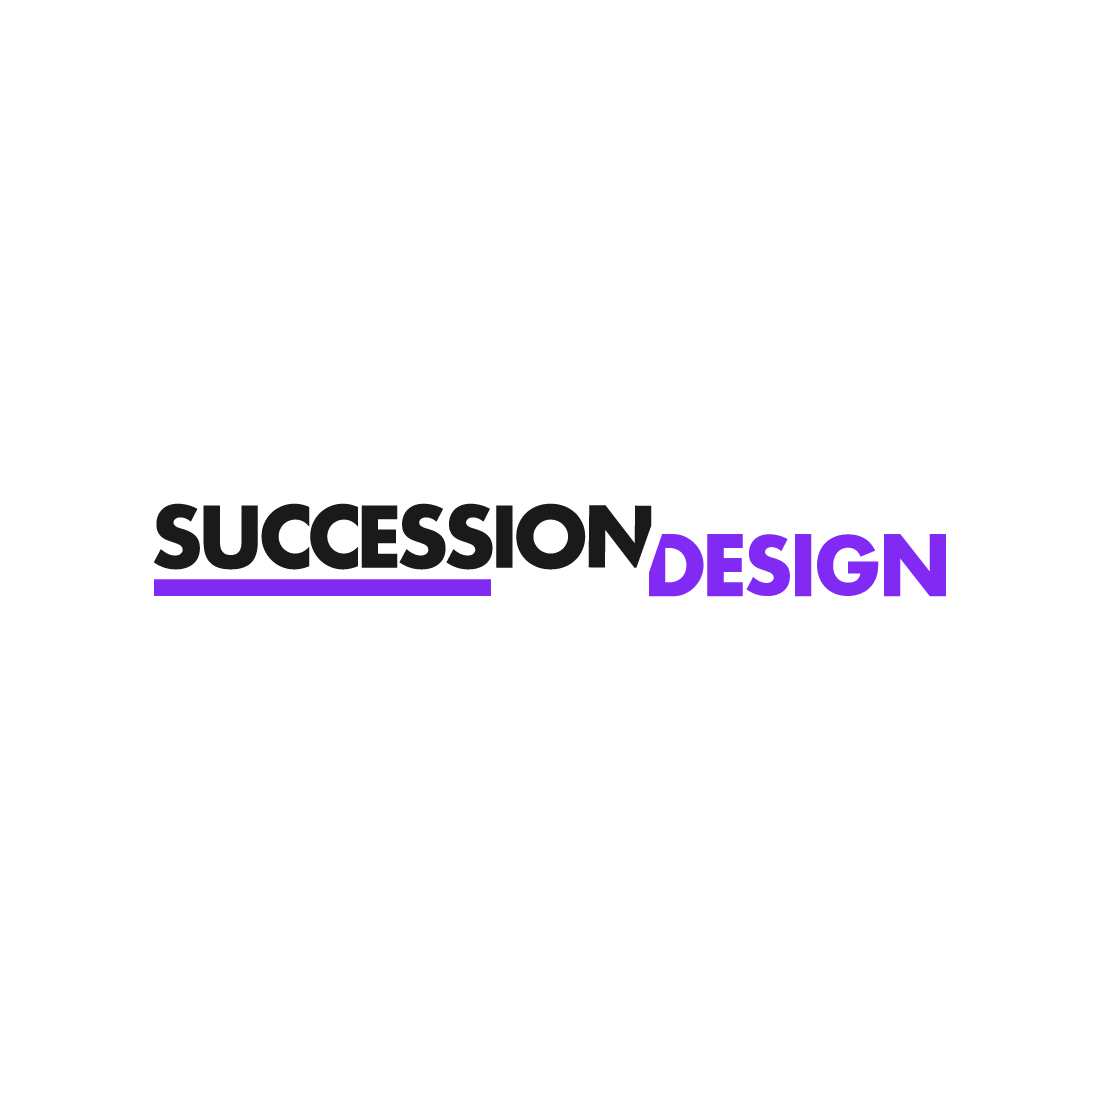 Succession Design